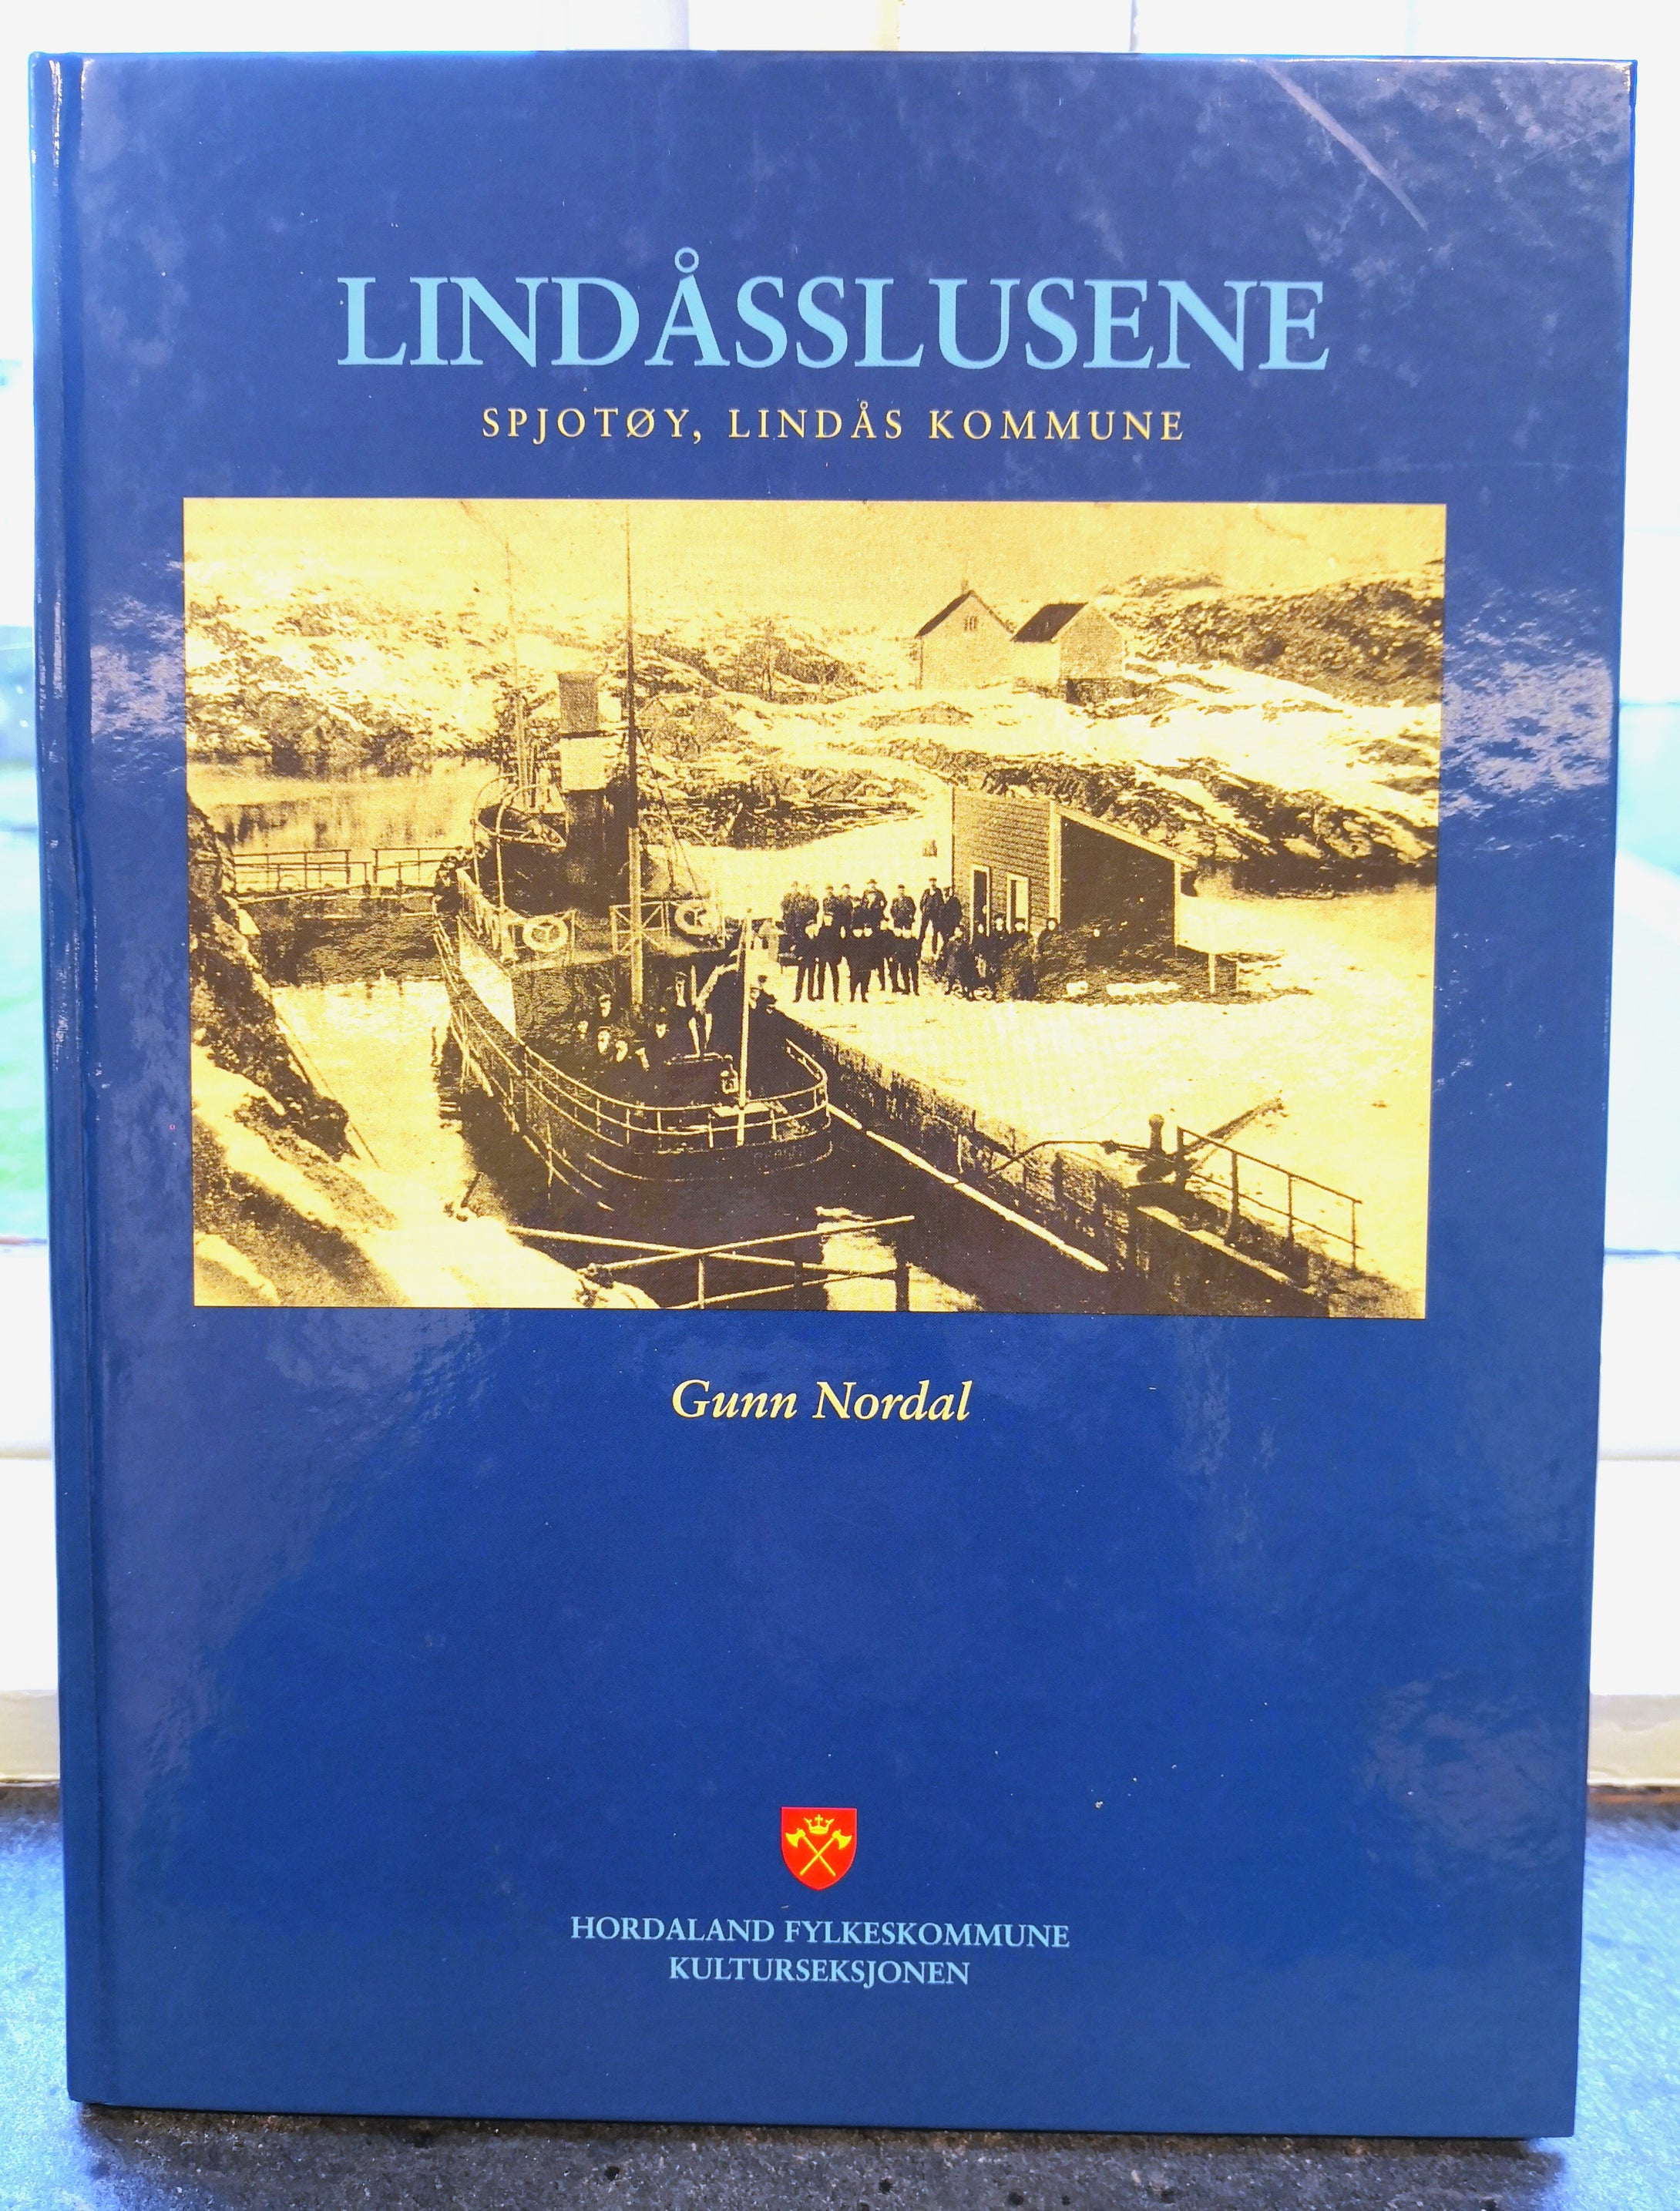 The Lindås sluices